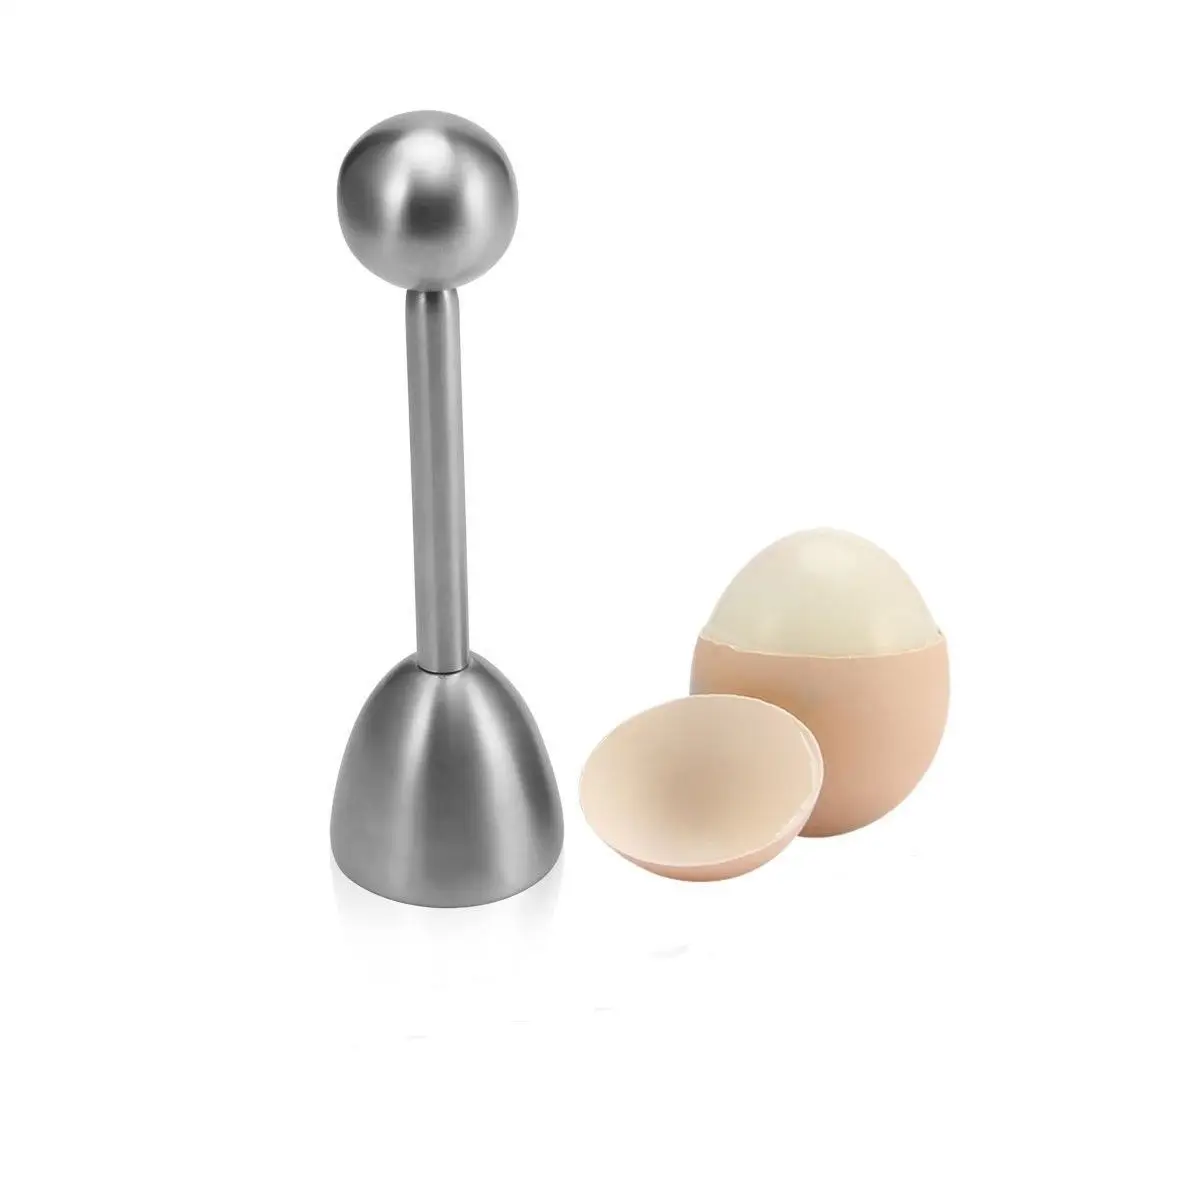 

Набор кухонных инструментов, металлический резак для яйца, нож для ракушек, вареное, сырое открытое яйцо из нержавеющей стали, открытое яйцо